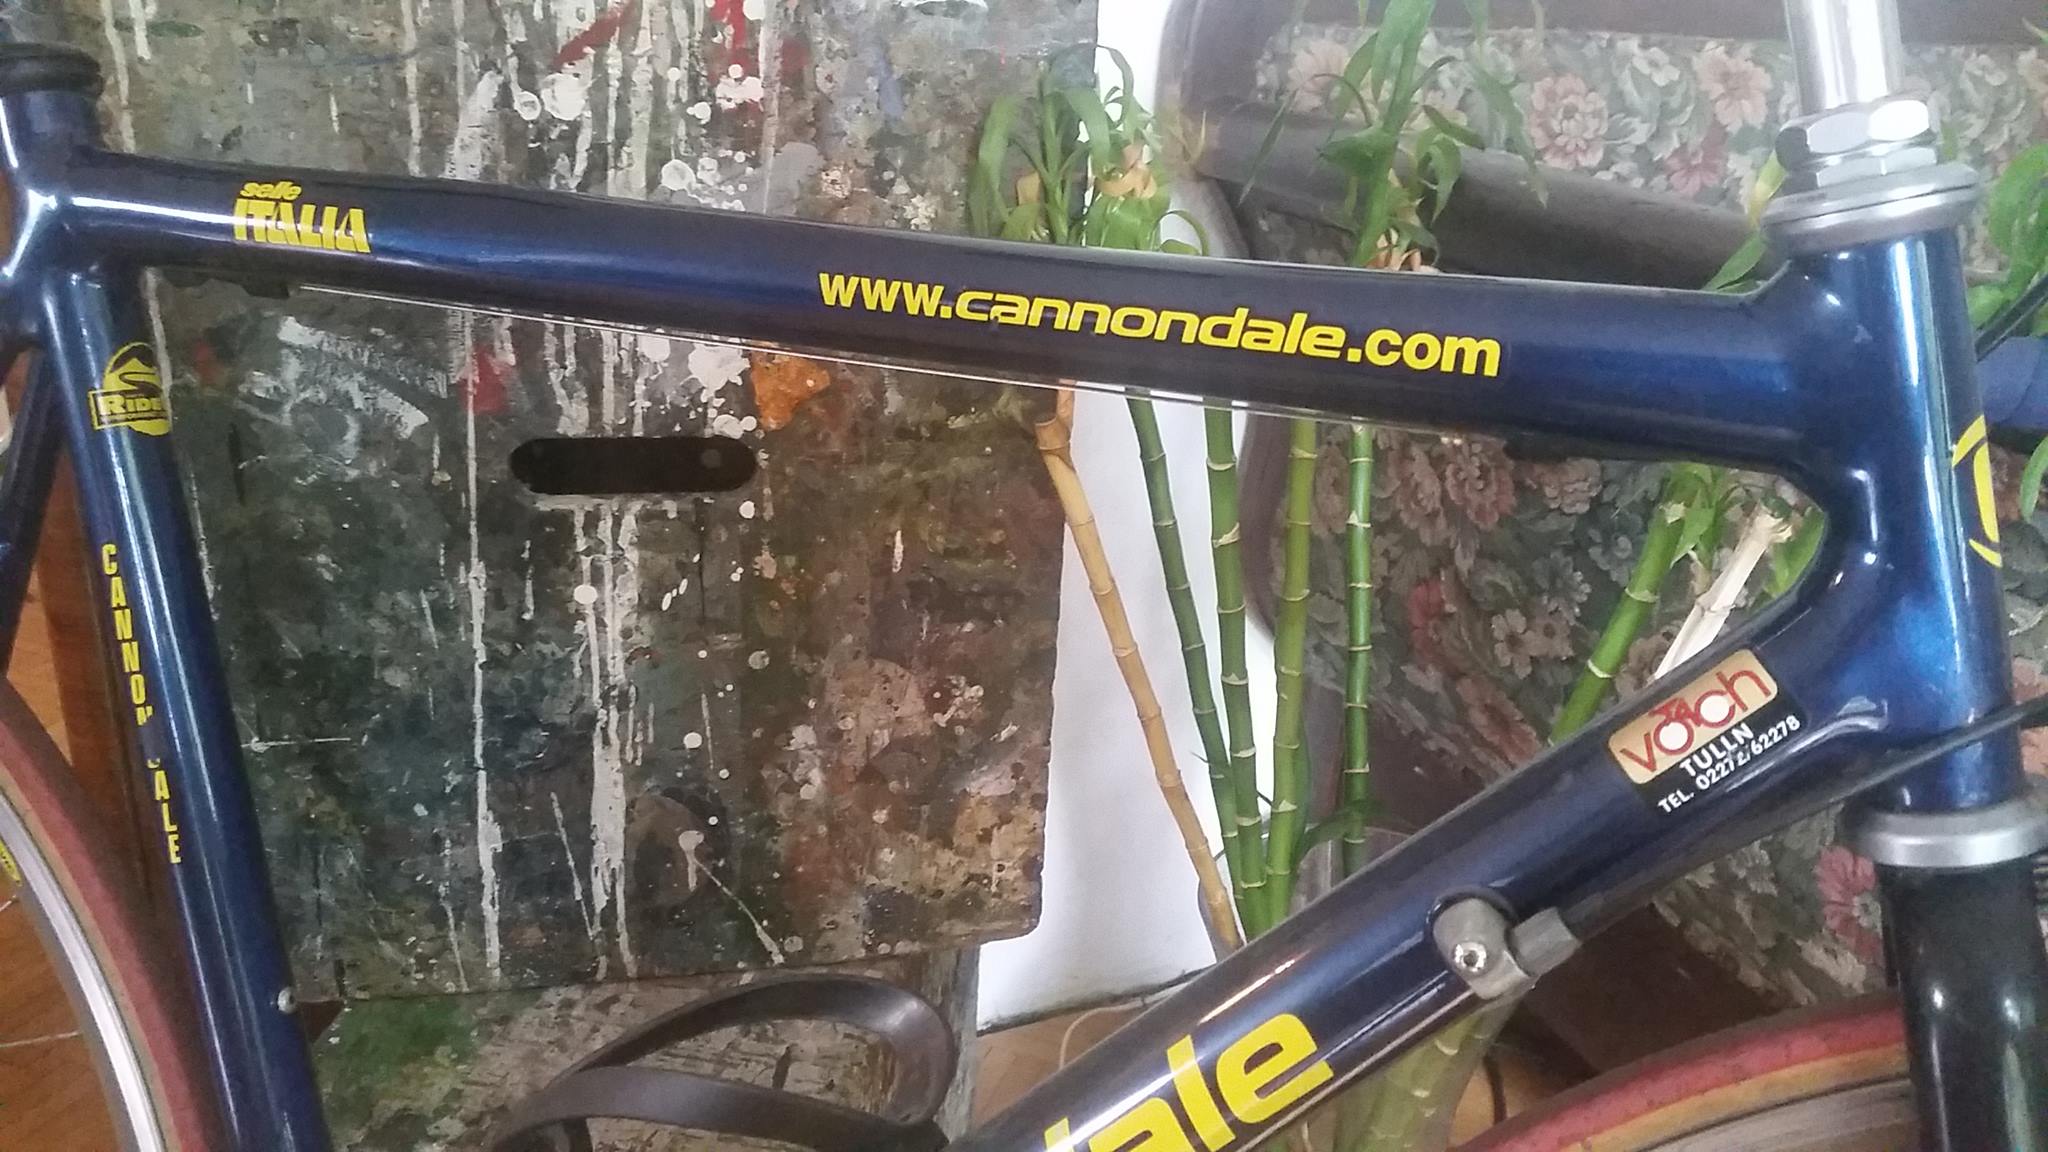 Cannondale ohne Bezeichnung... R600-900 ??? - Rennrad powered by CONTEC -  Bikeboard